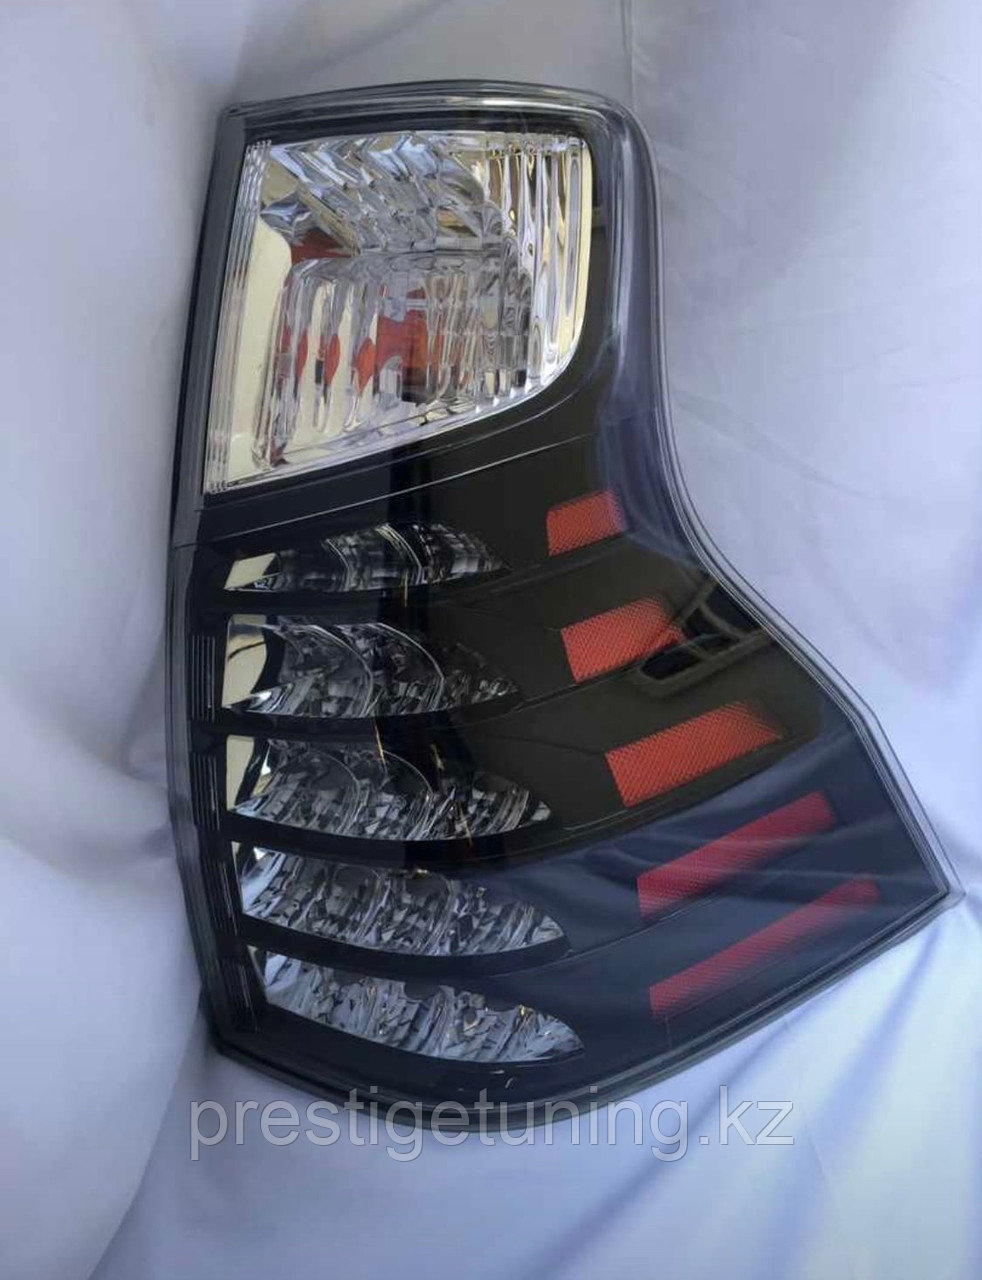 Задние фонари на Land Cruiser Prado 150 2010-17 дизайн GX (Черный цвет)